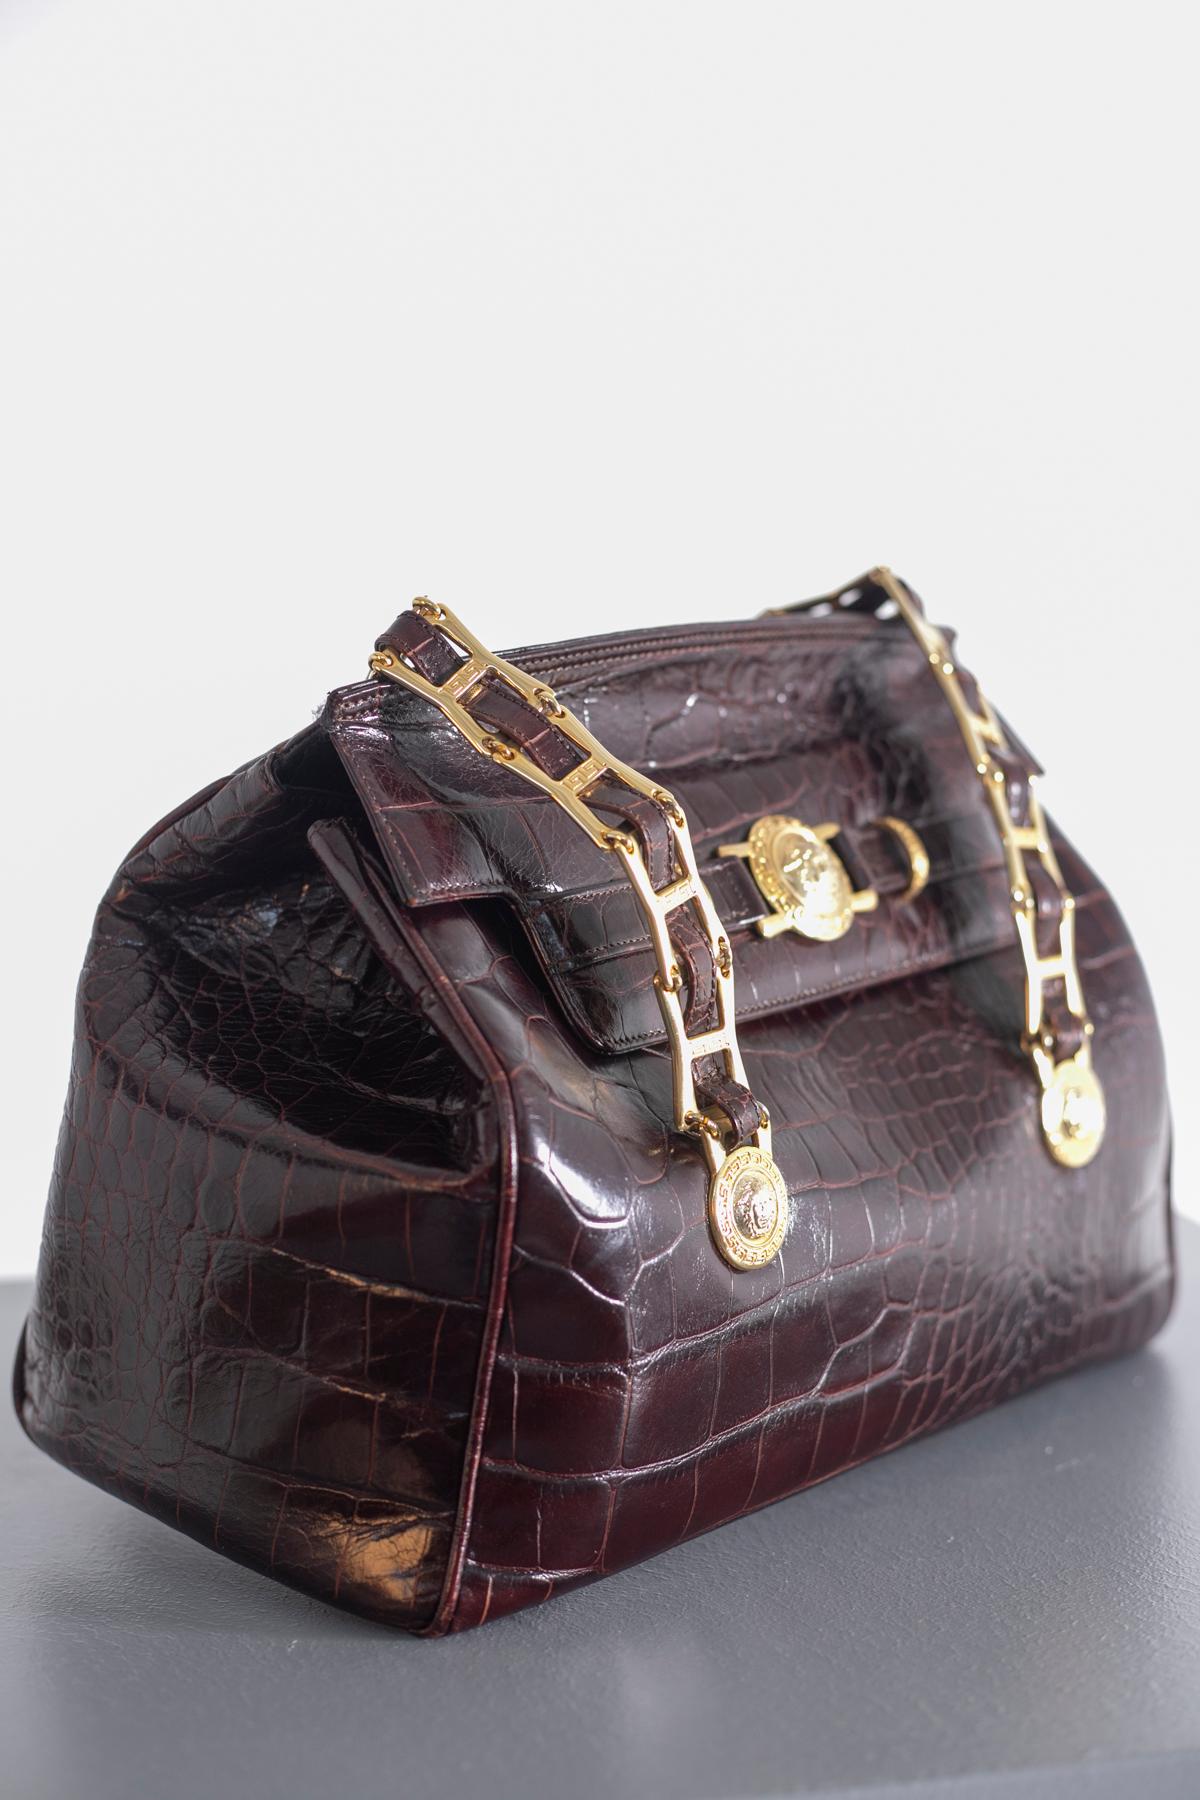 Gianni Versace Bordeaux Faux Leather Handle Bag For Sale 7